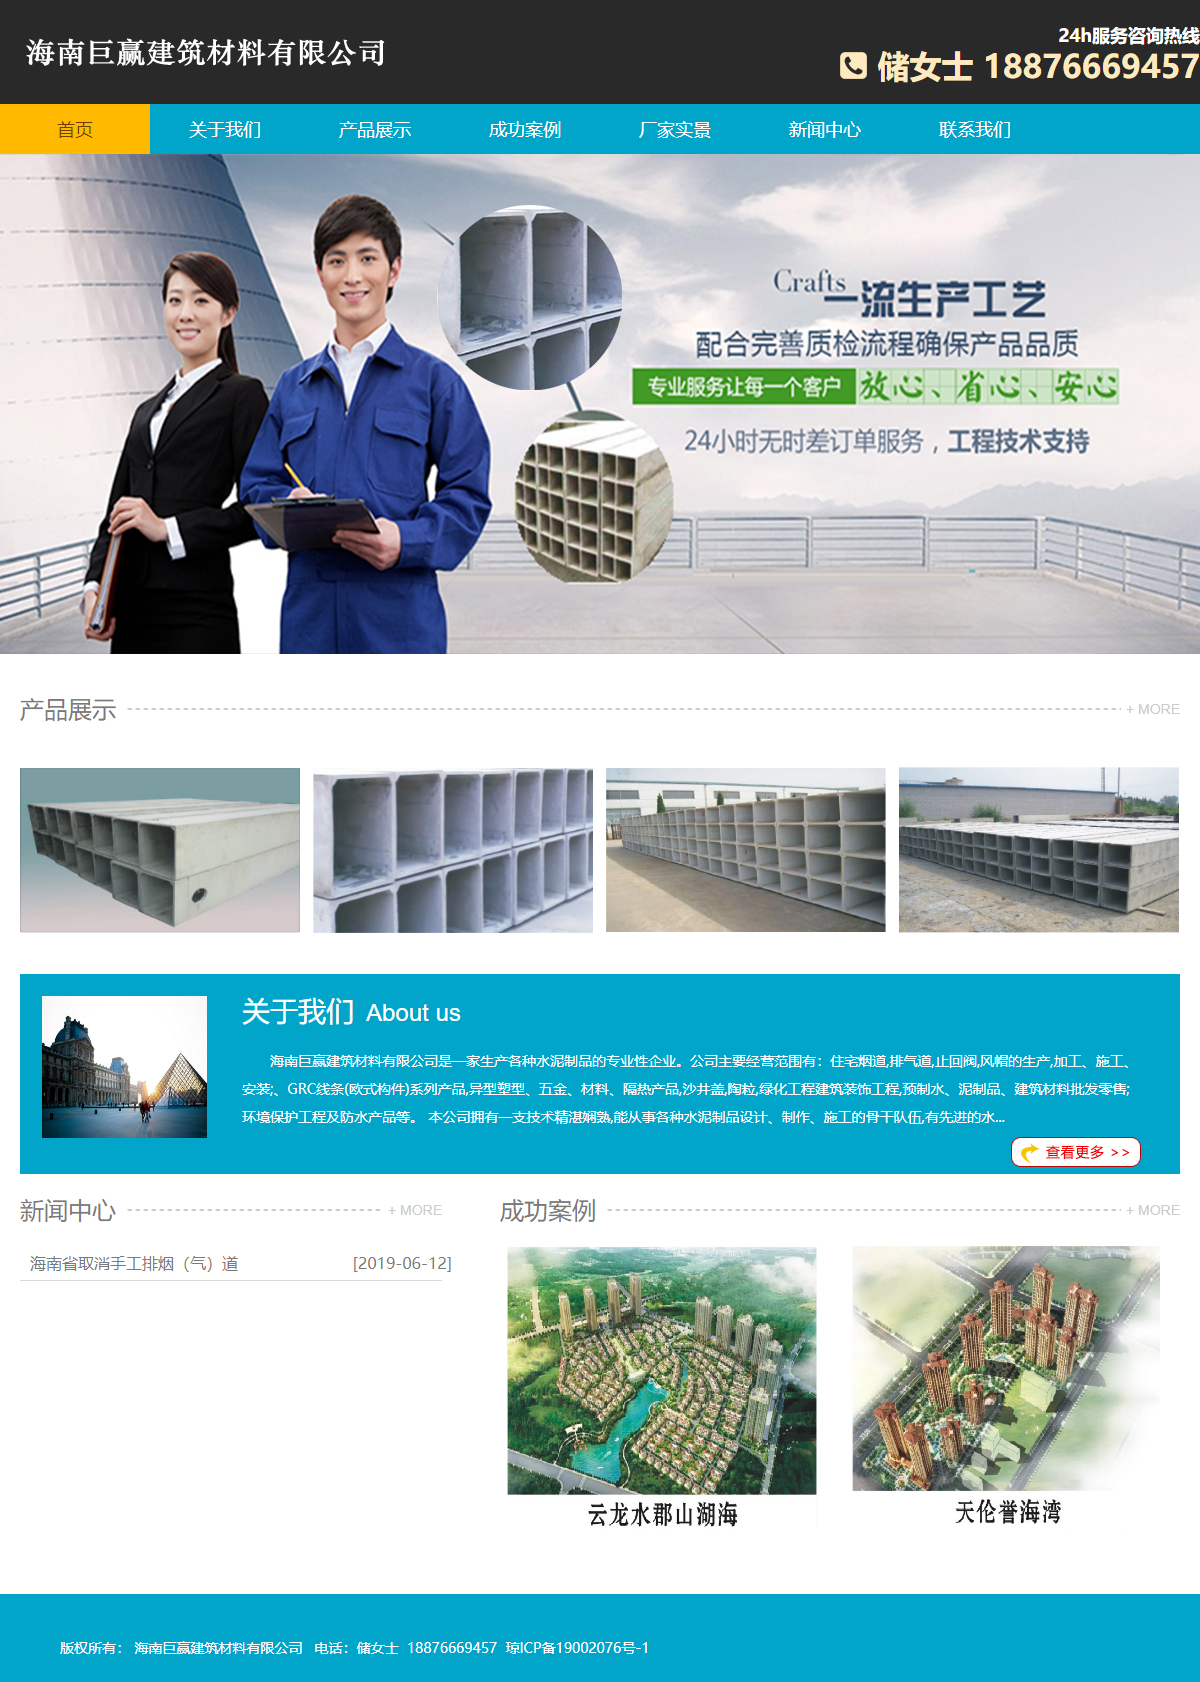 海南巨赢建筑材料有限公司网站案例